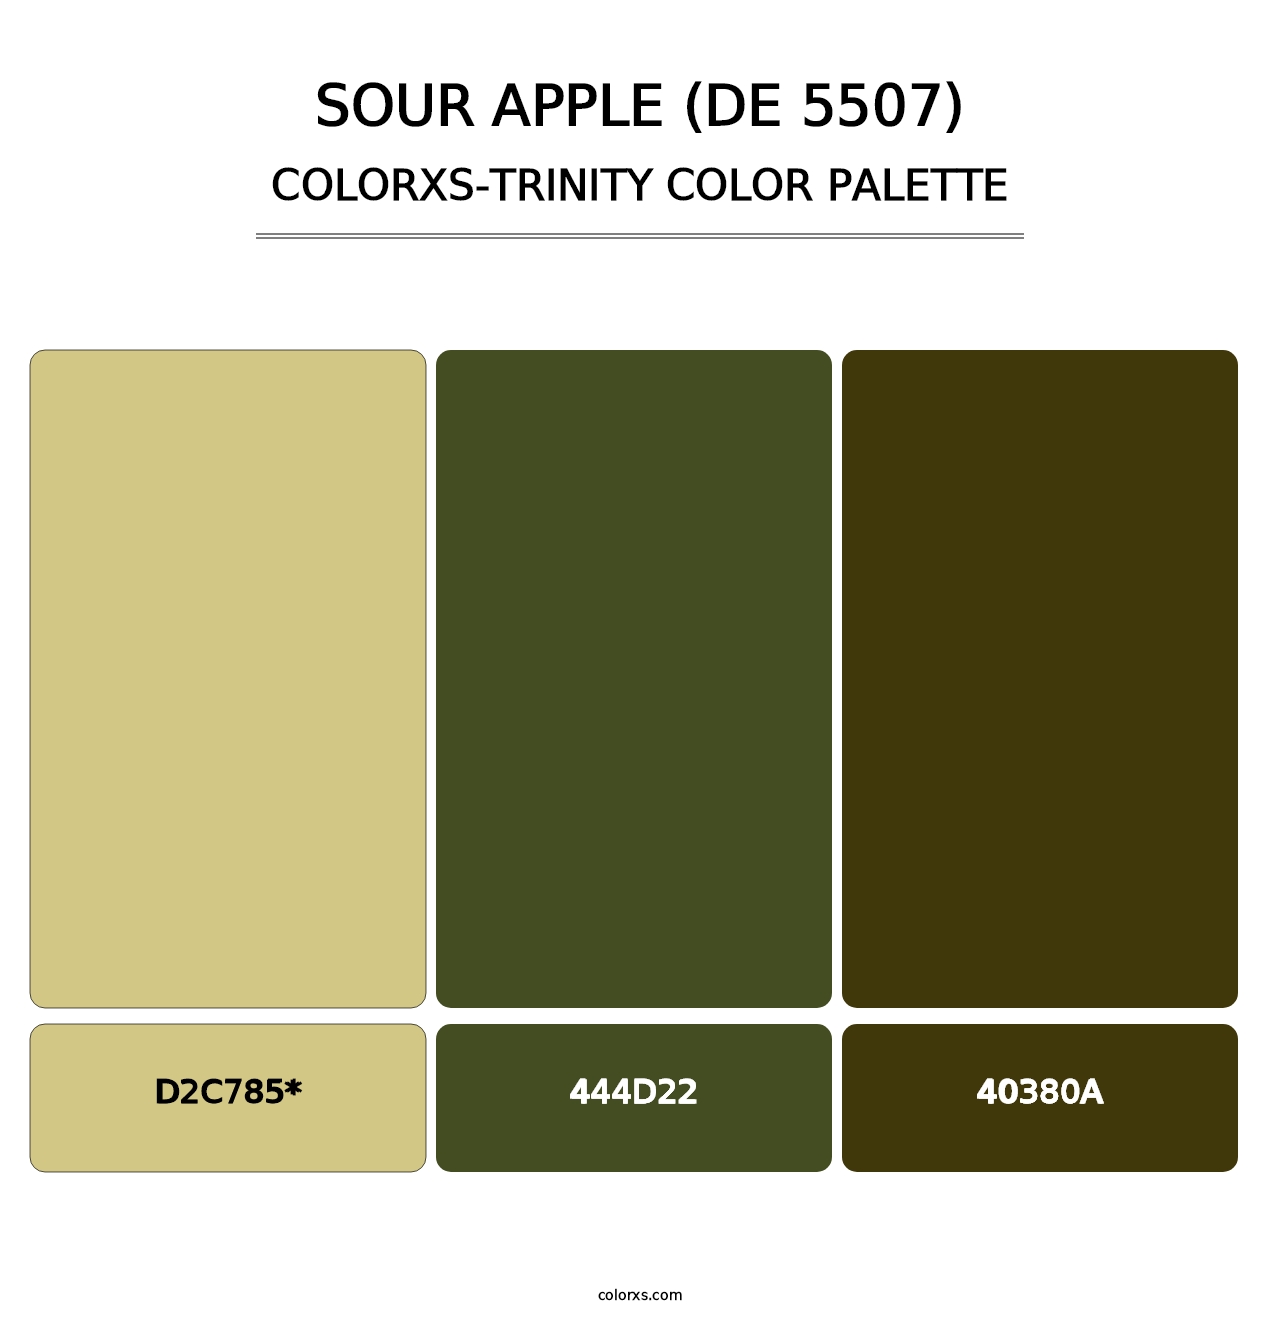 Sour Apple (DE 5507) - Colorxs Trinity Palette